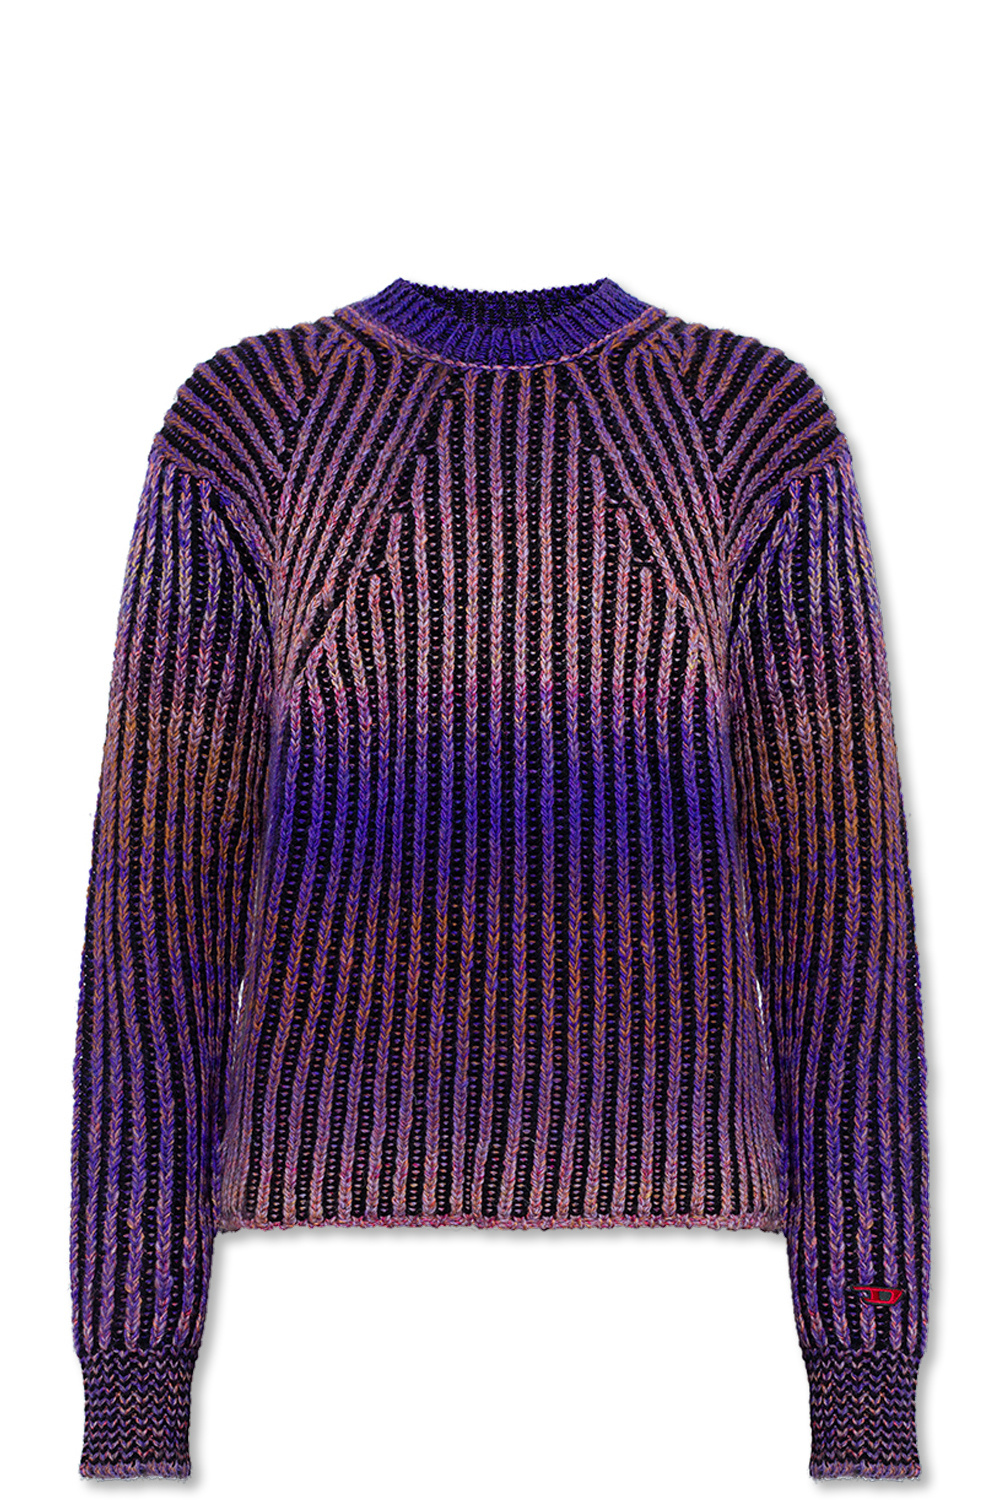 Diesel ‘K-Oakland’ sweater